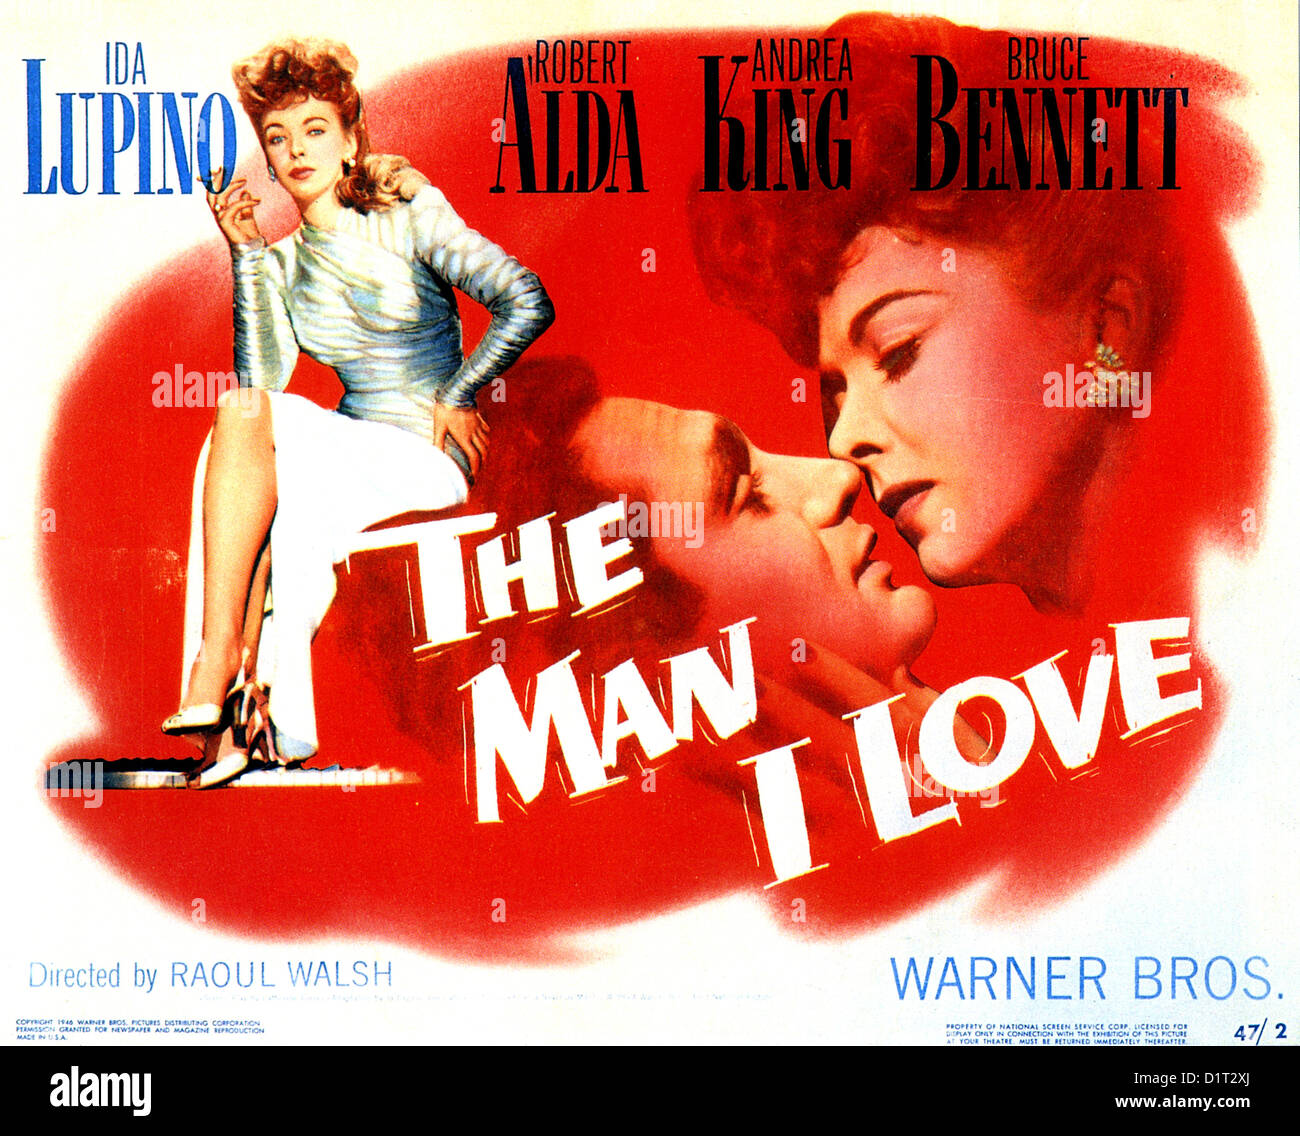 L'HOMME QUE J'aime l'affiche pour 1947 film Warner Bros avec IDA Lupino et Robert Alda Banque D'Images